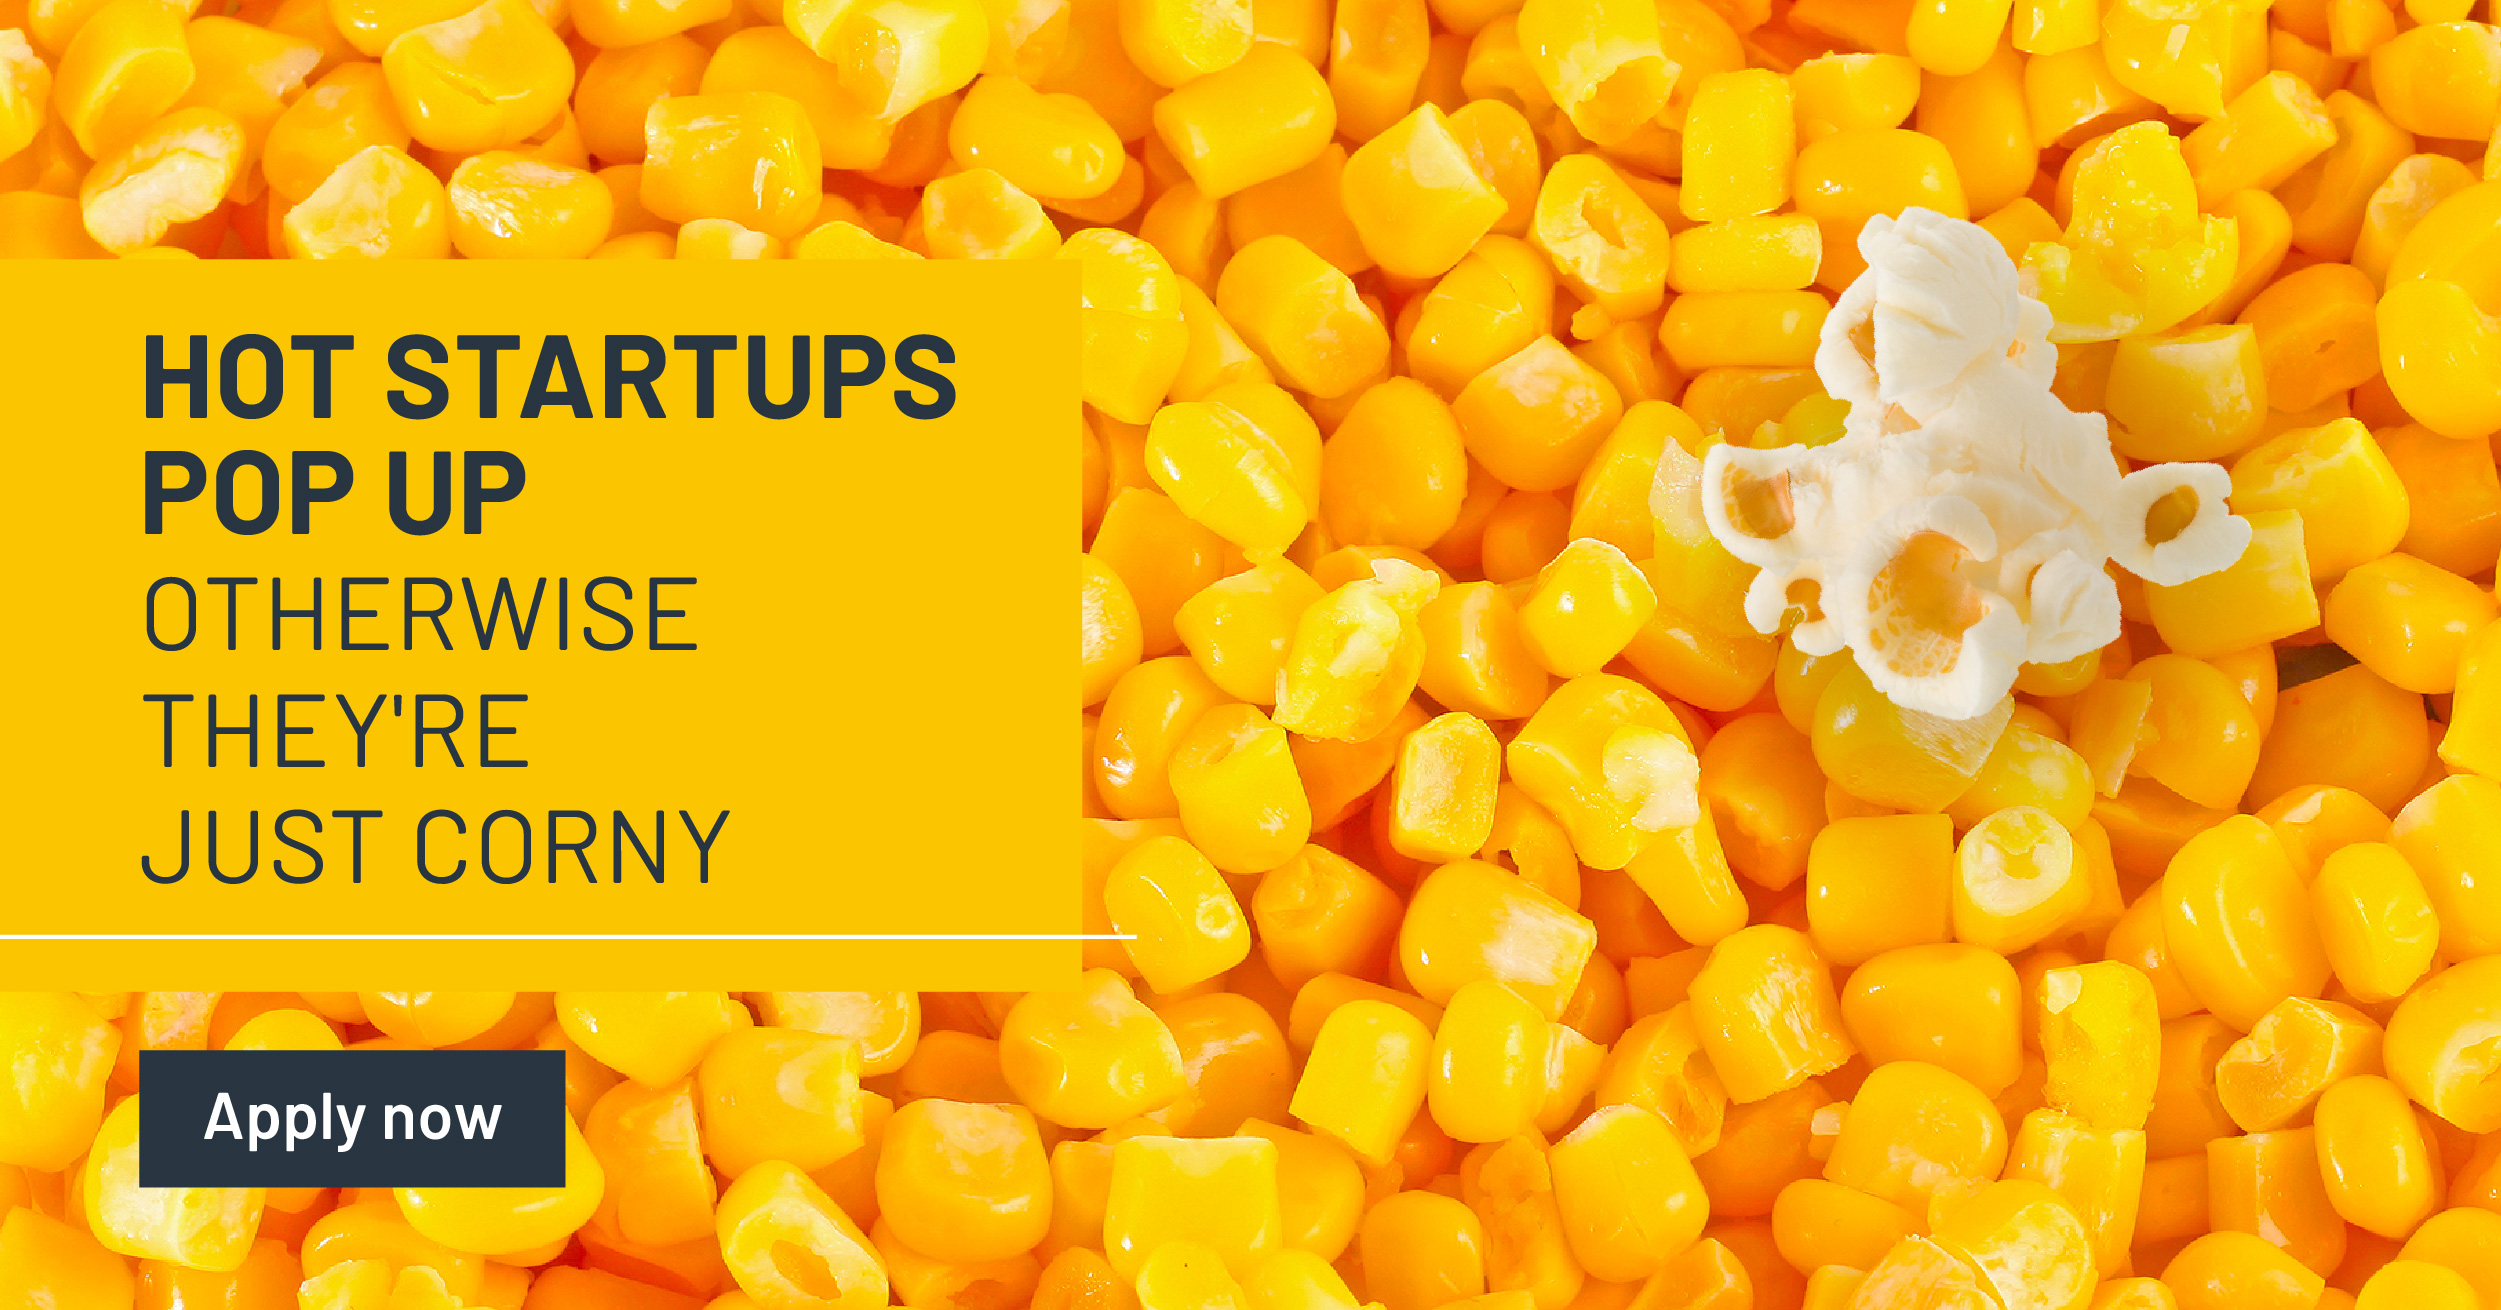 LVenture Group e LUISS EnLabs lanciano la call dell’estate: fino a €160K per le migliori startup digitali.